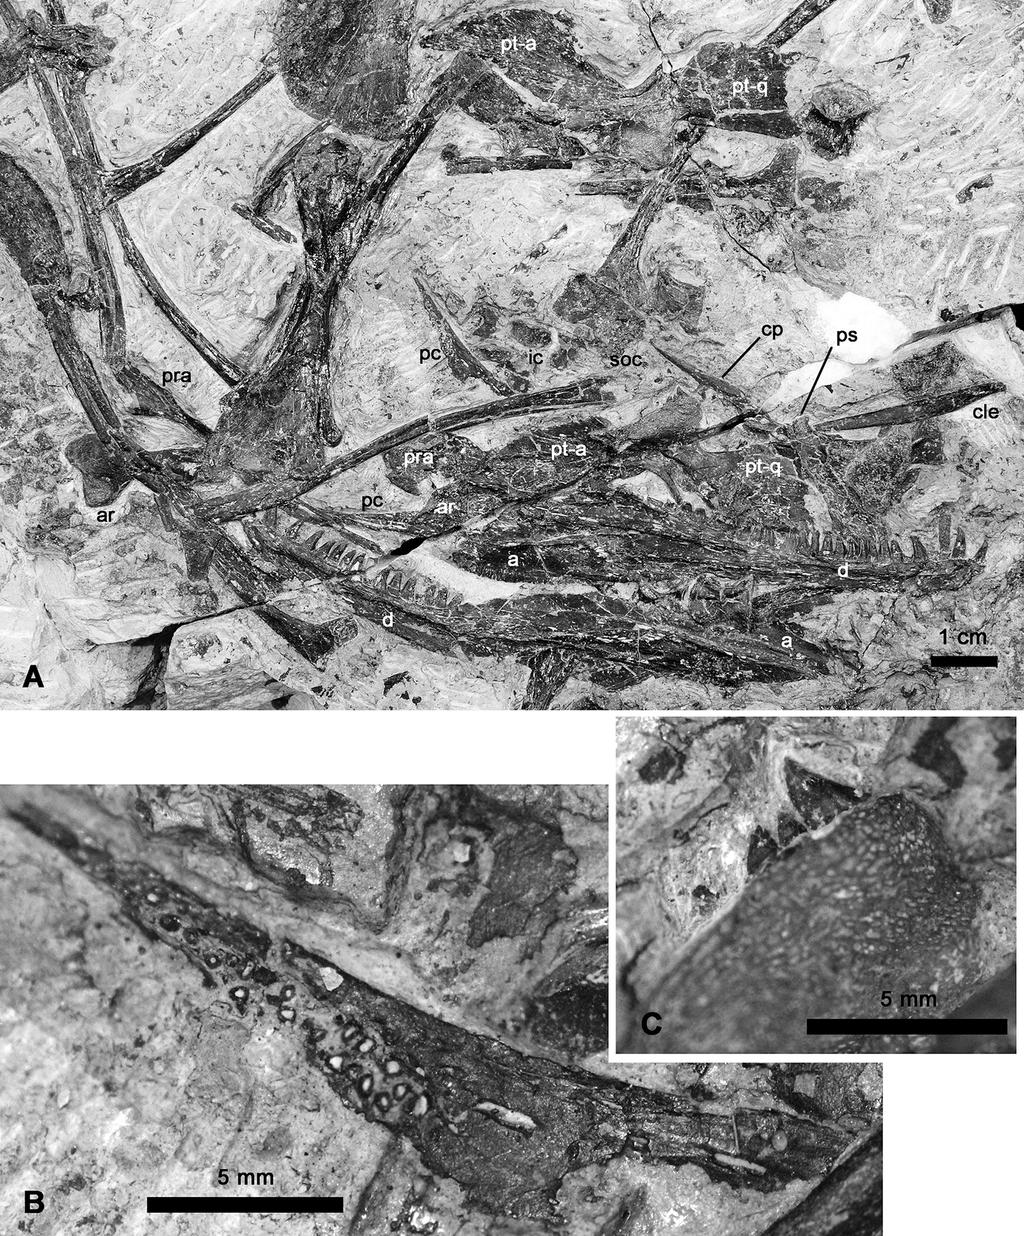 F. Spindler et al.: New information on Ianthodon 23 Figure 5. Ianthodon schultzei holotype KUVP 133735.